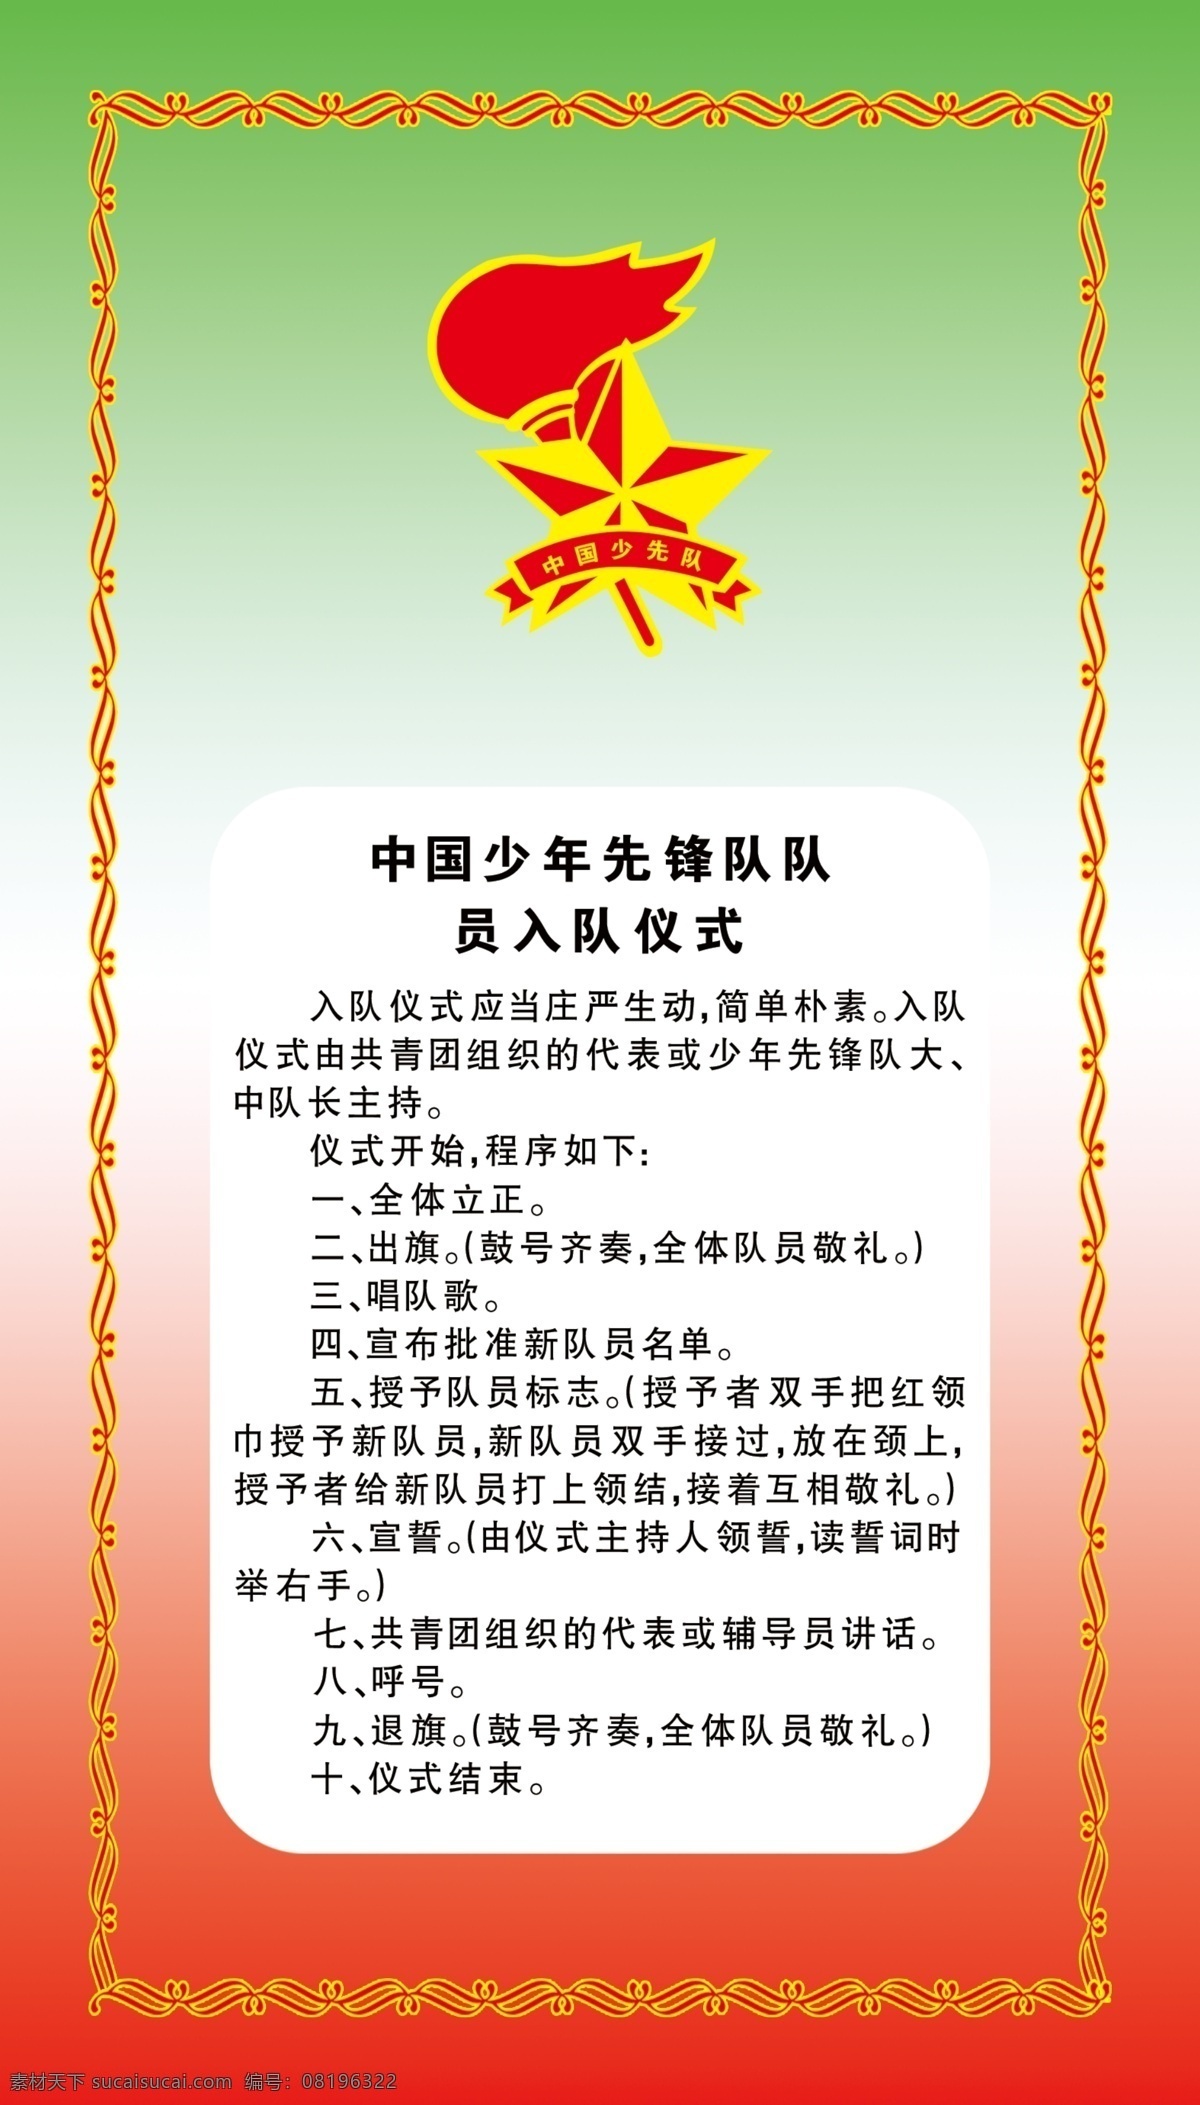 中国少年先锋队 队员 入队 仪式 队名 花边 标志 少先队 分层 源文件